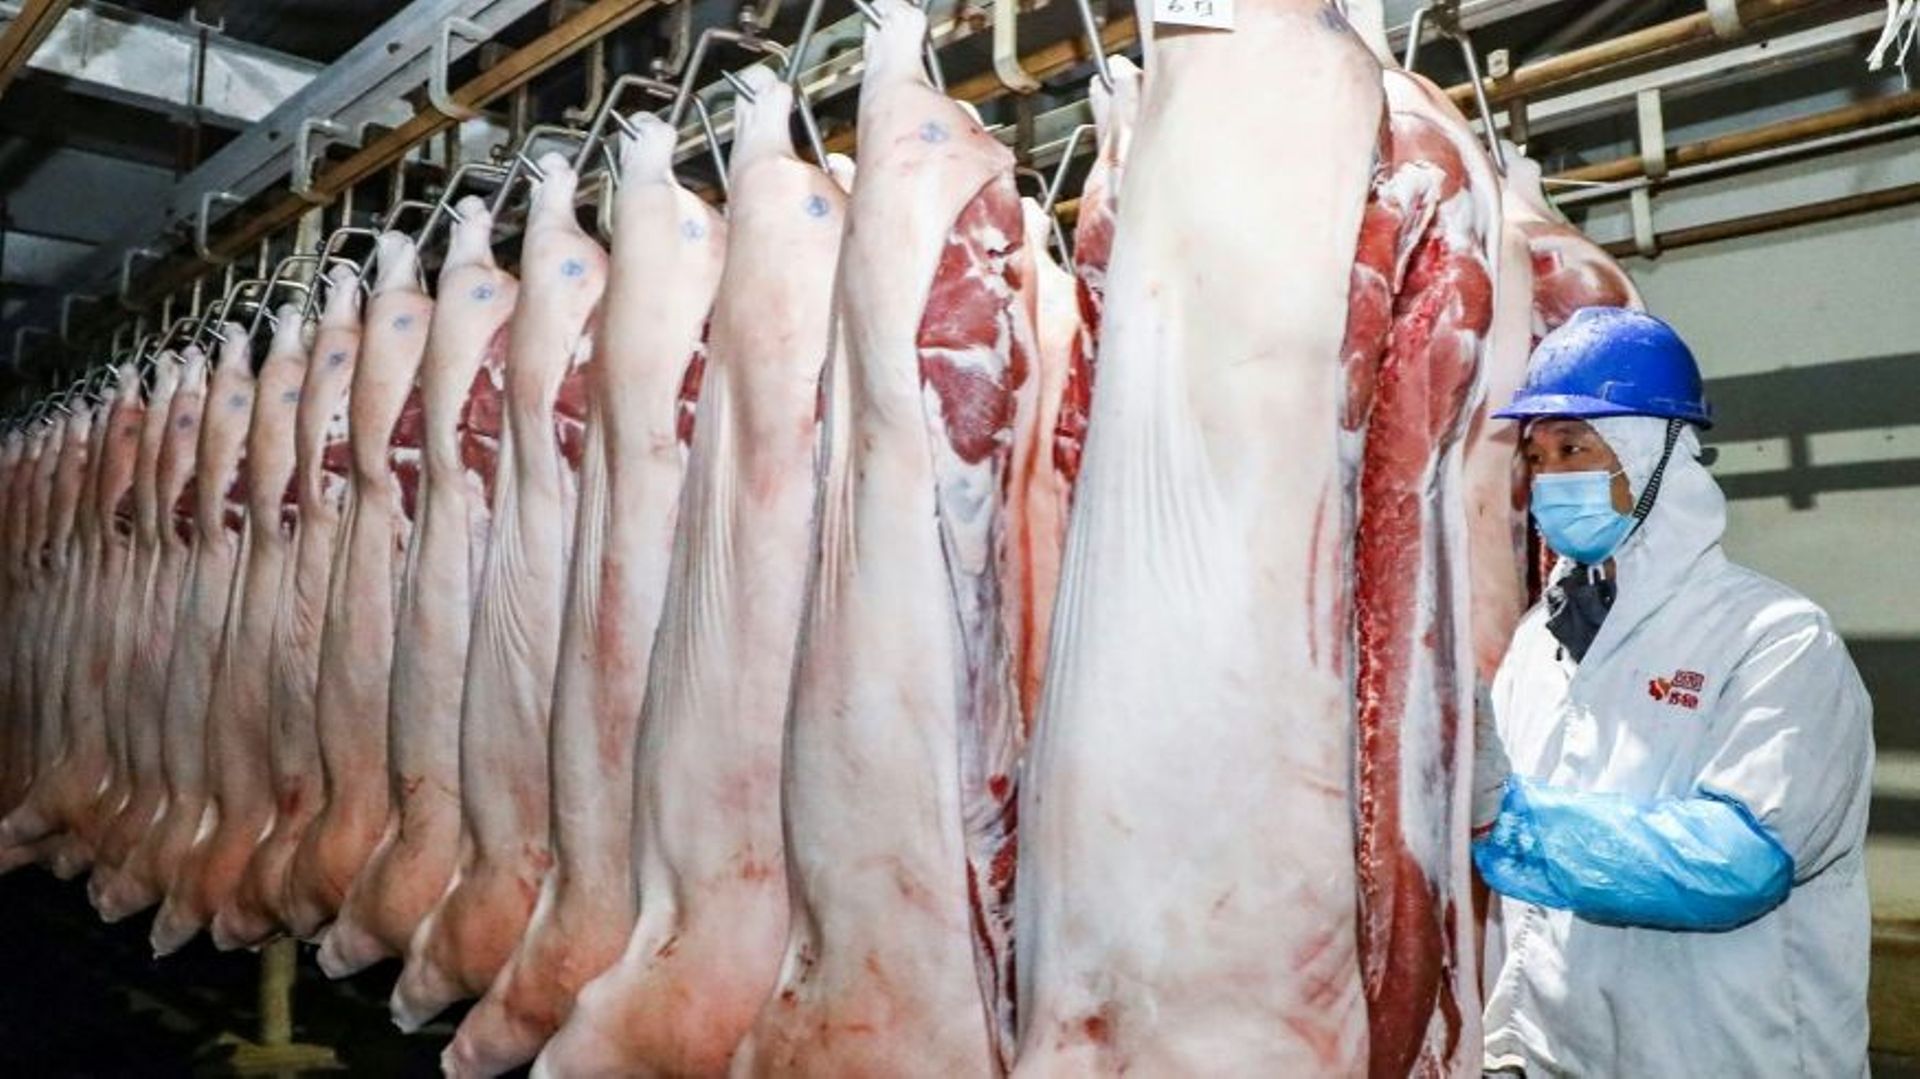 La Chine va puiser 200.000 tonnes de porc dans ses réserves nationales pour enrayer une flambée du prix de cette viande incontournable dans le pays